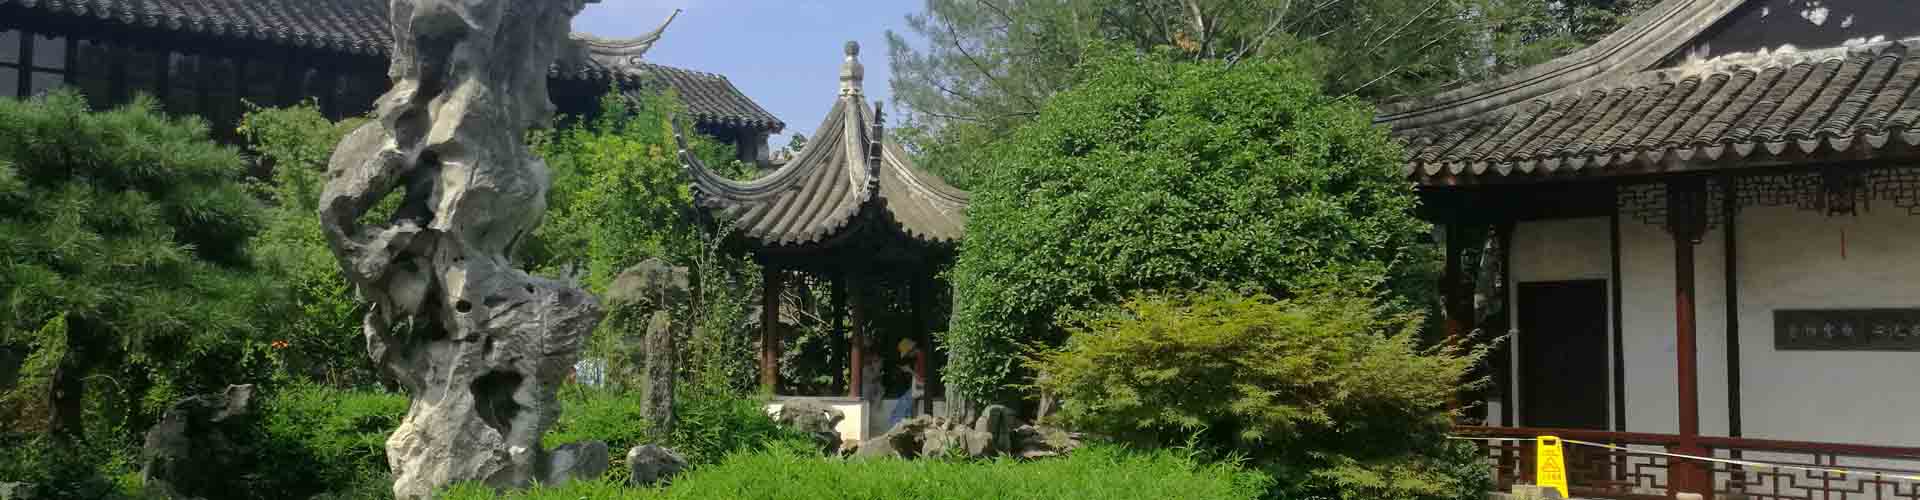 Jardin Liuyuan Suzhou